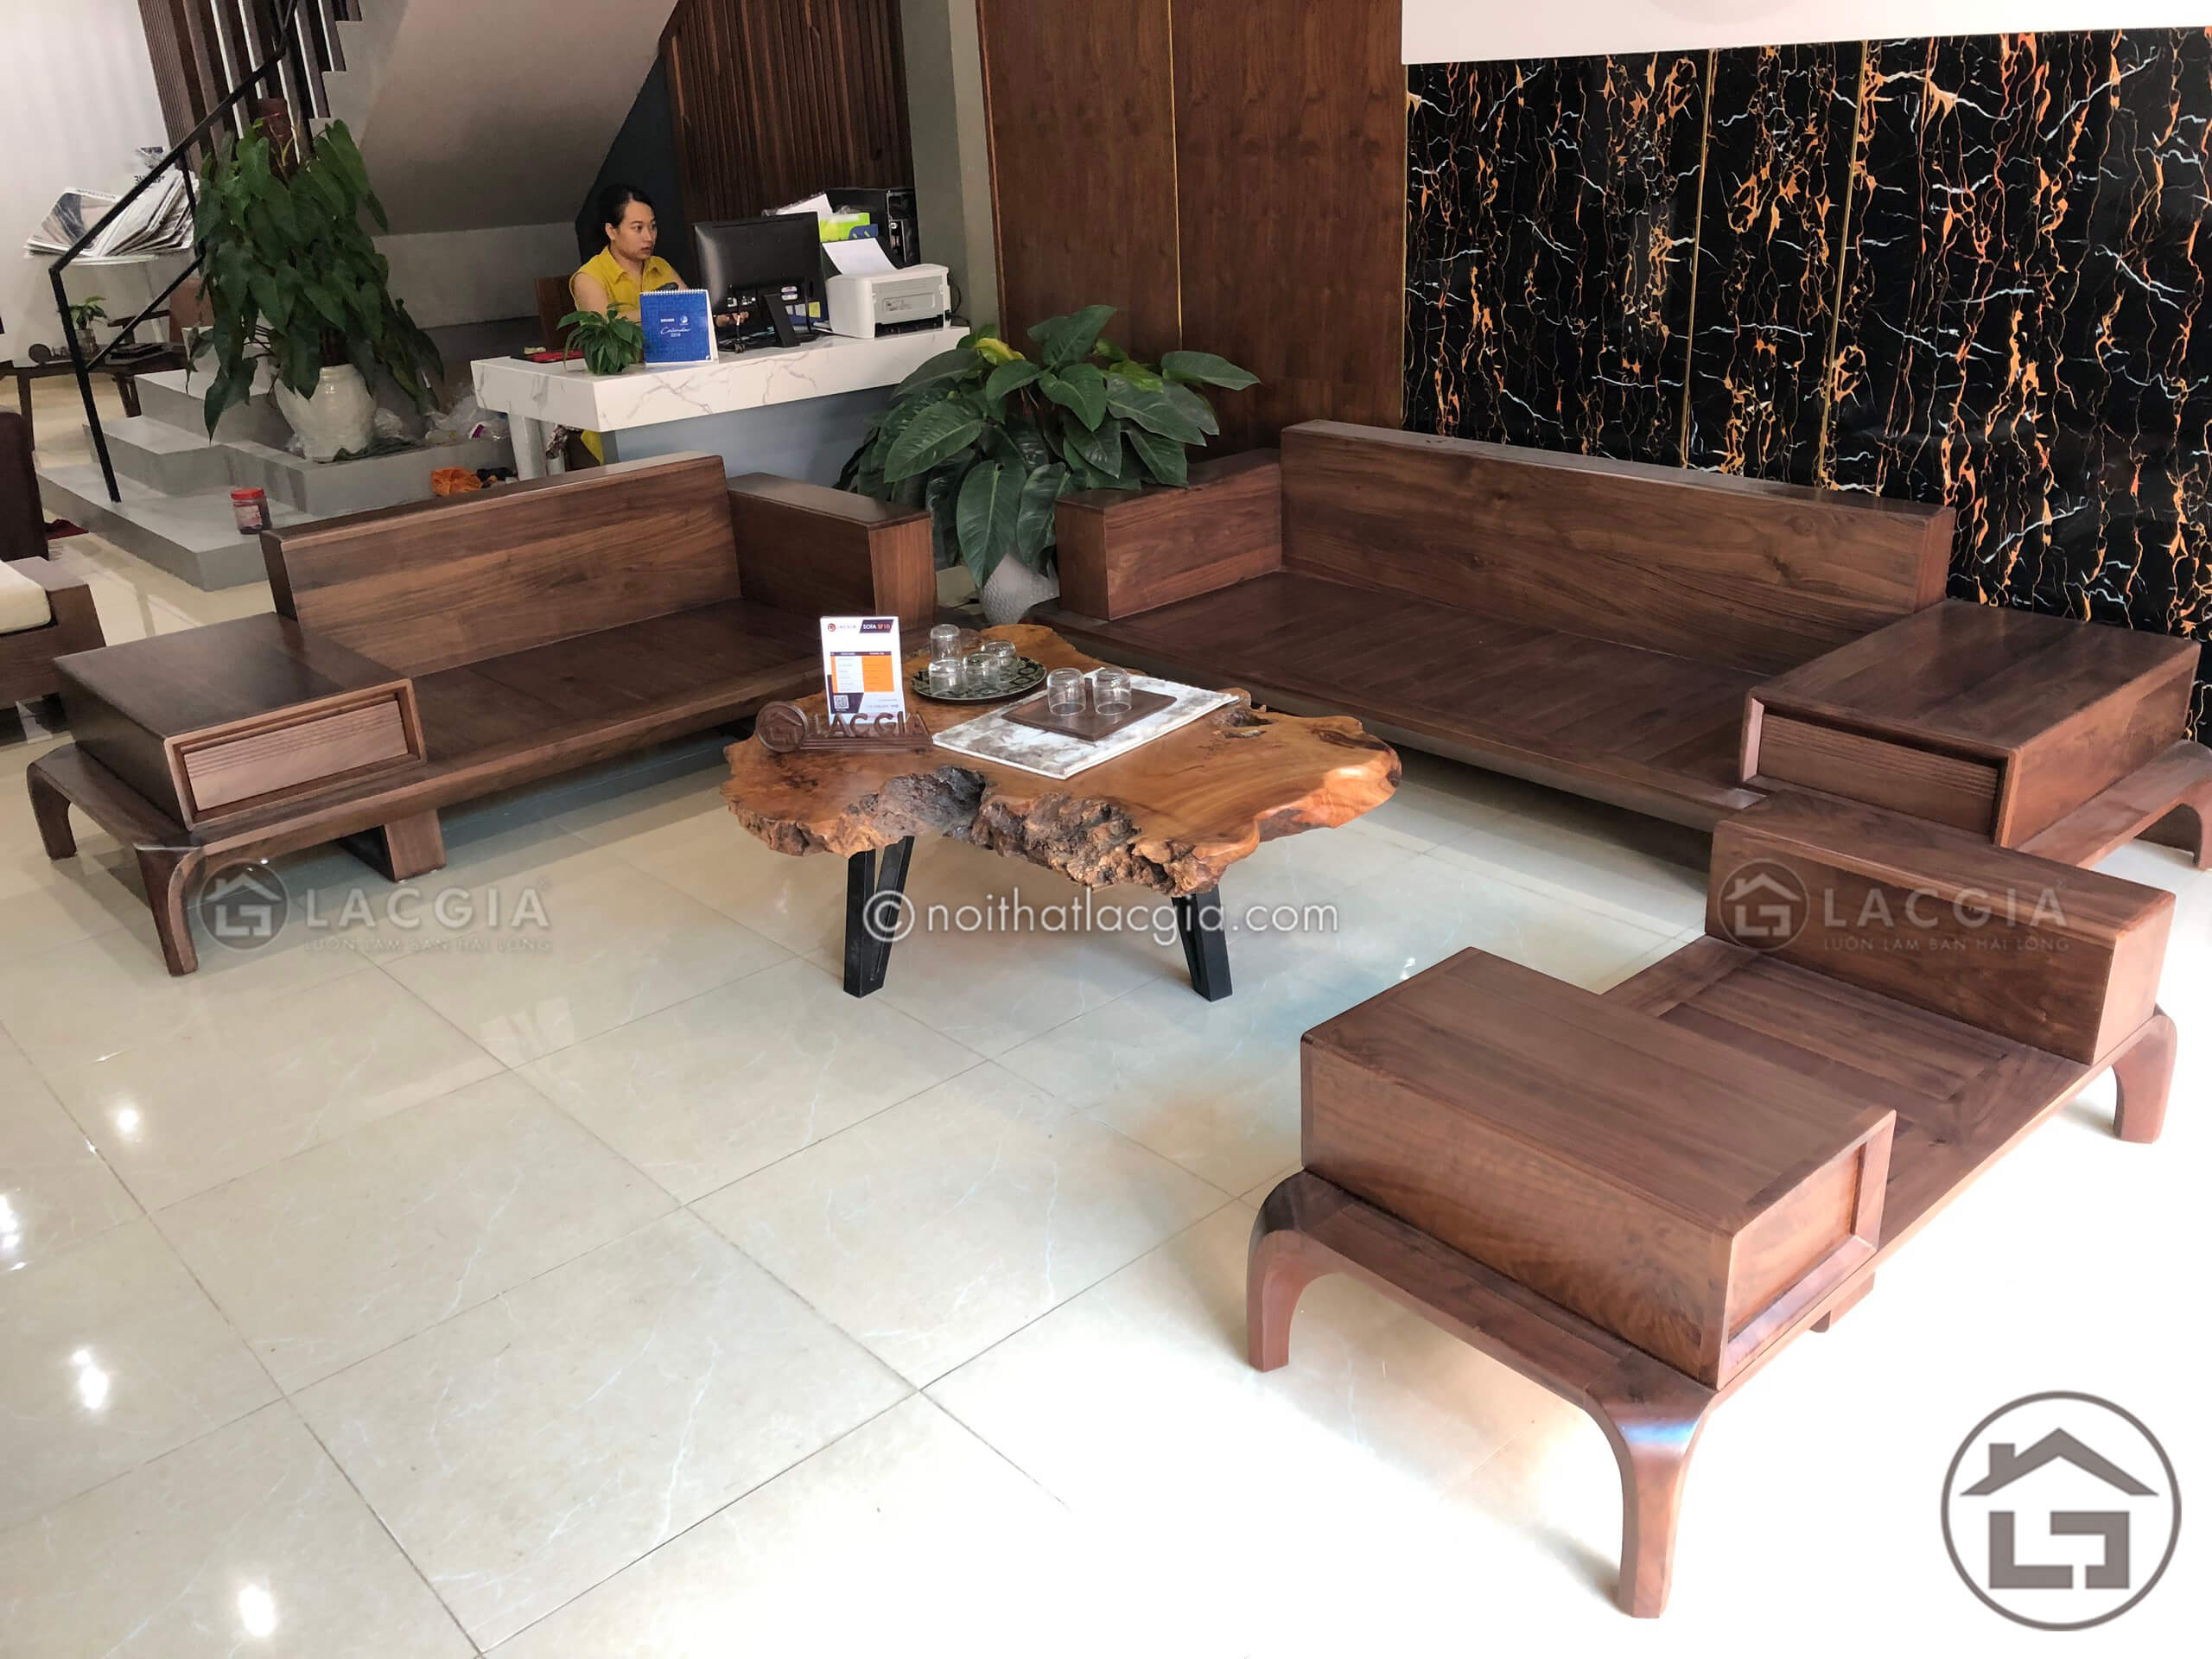 Phan khung cua sofa go phong khach - Định nghĩa một mẫu sofa gỗ phòng khách hiện đại đẹp, hoàn hảo?